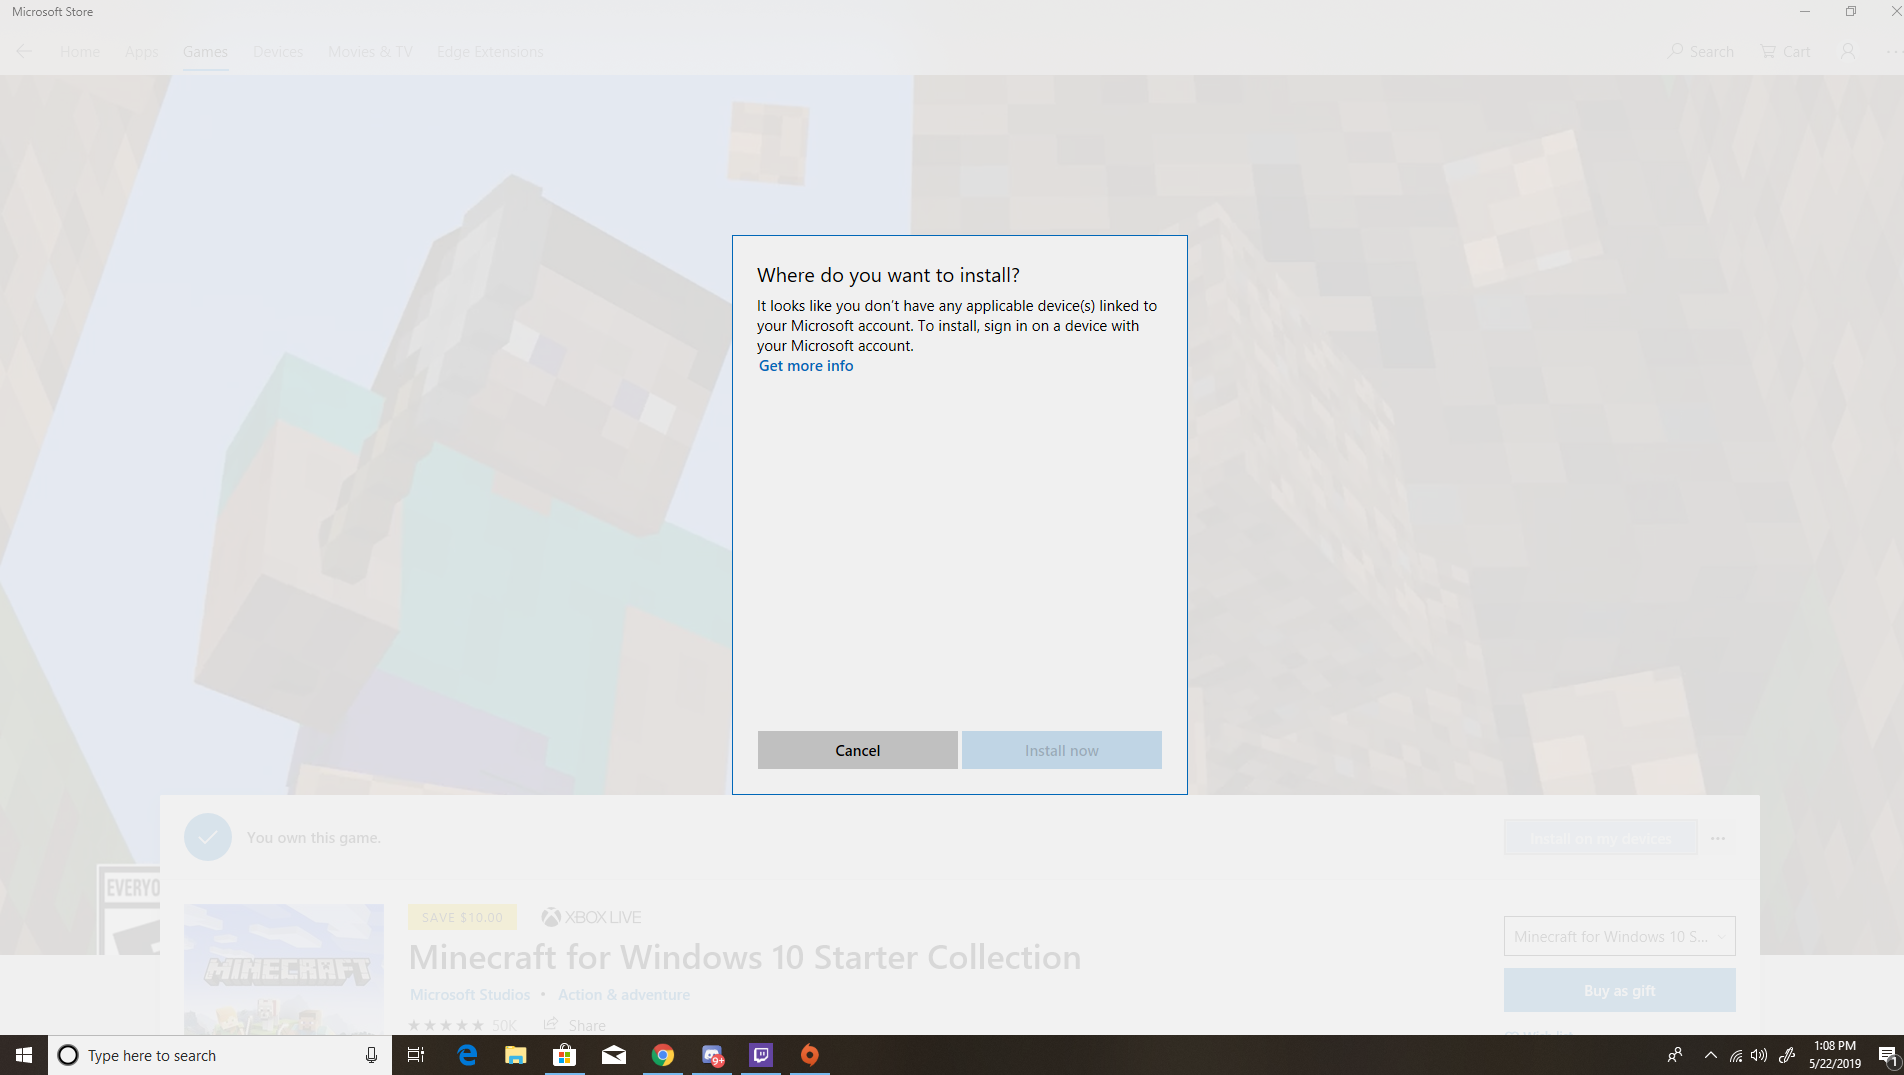 Minecraft for Windows 10 won't install 0ddbf4cd-ad9f-49cf-96ce-ca97b6778d2e?upload=true.png